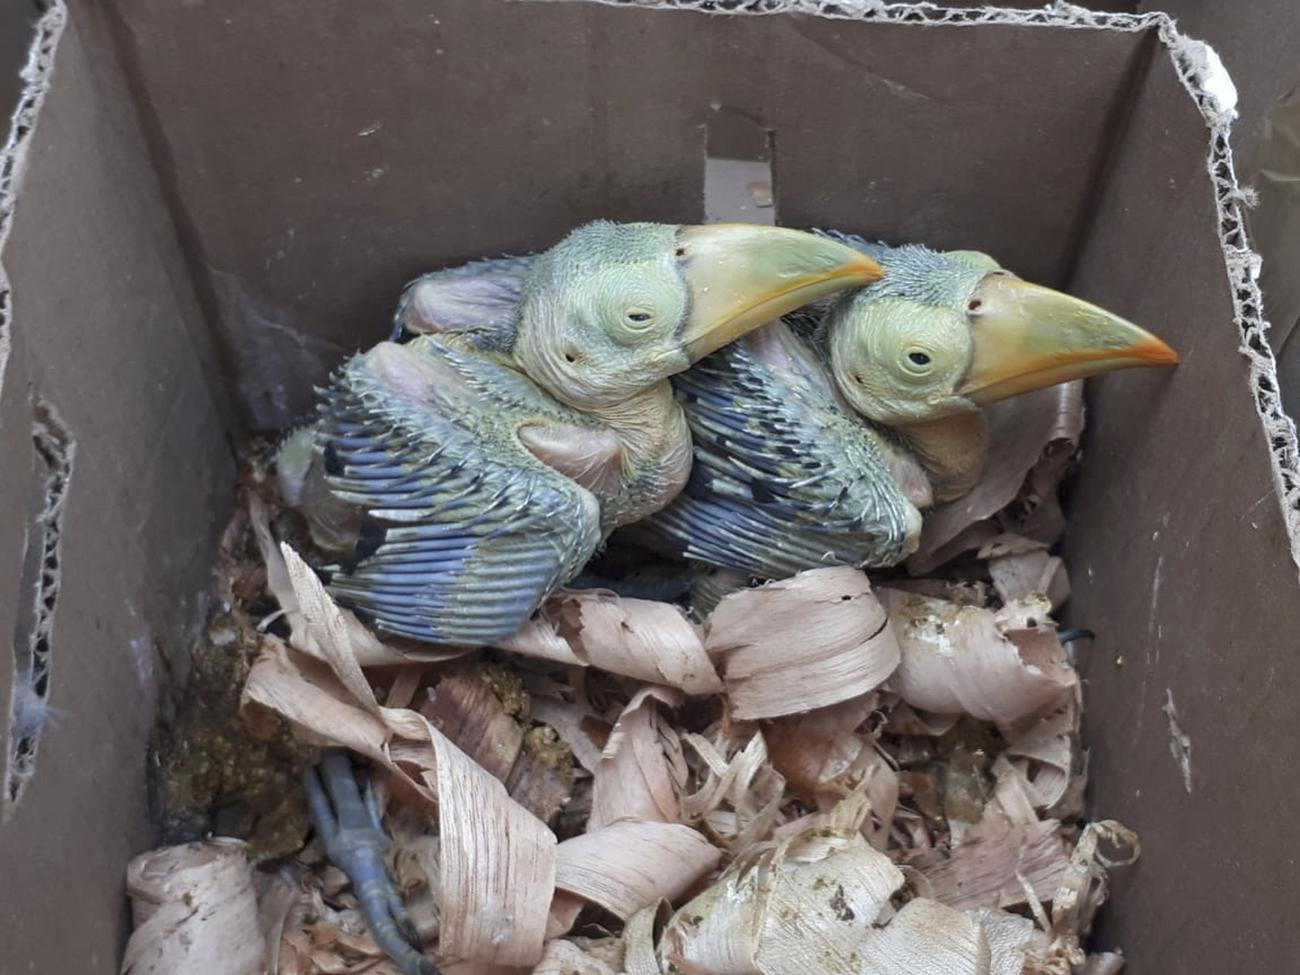 Des oisillons fraîchement éclos, enfermés dans un carton et interceptés à la frontière mexicaine. [Interpol/AP/Keystone]